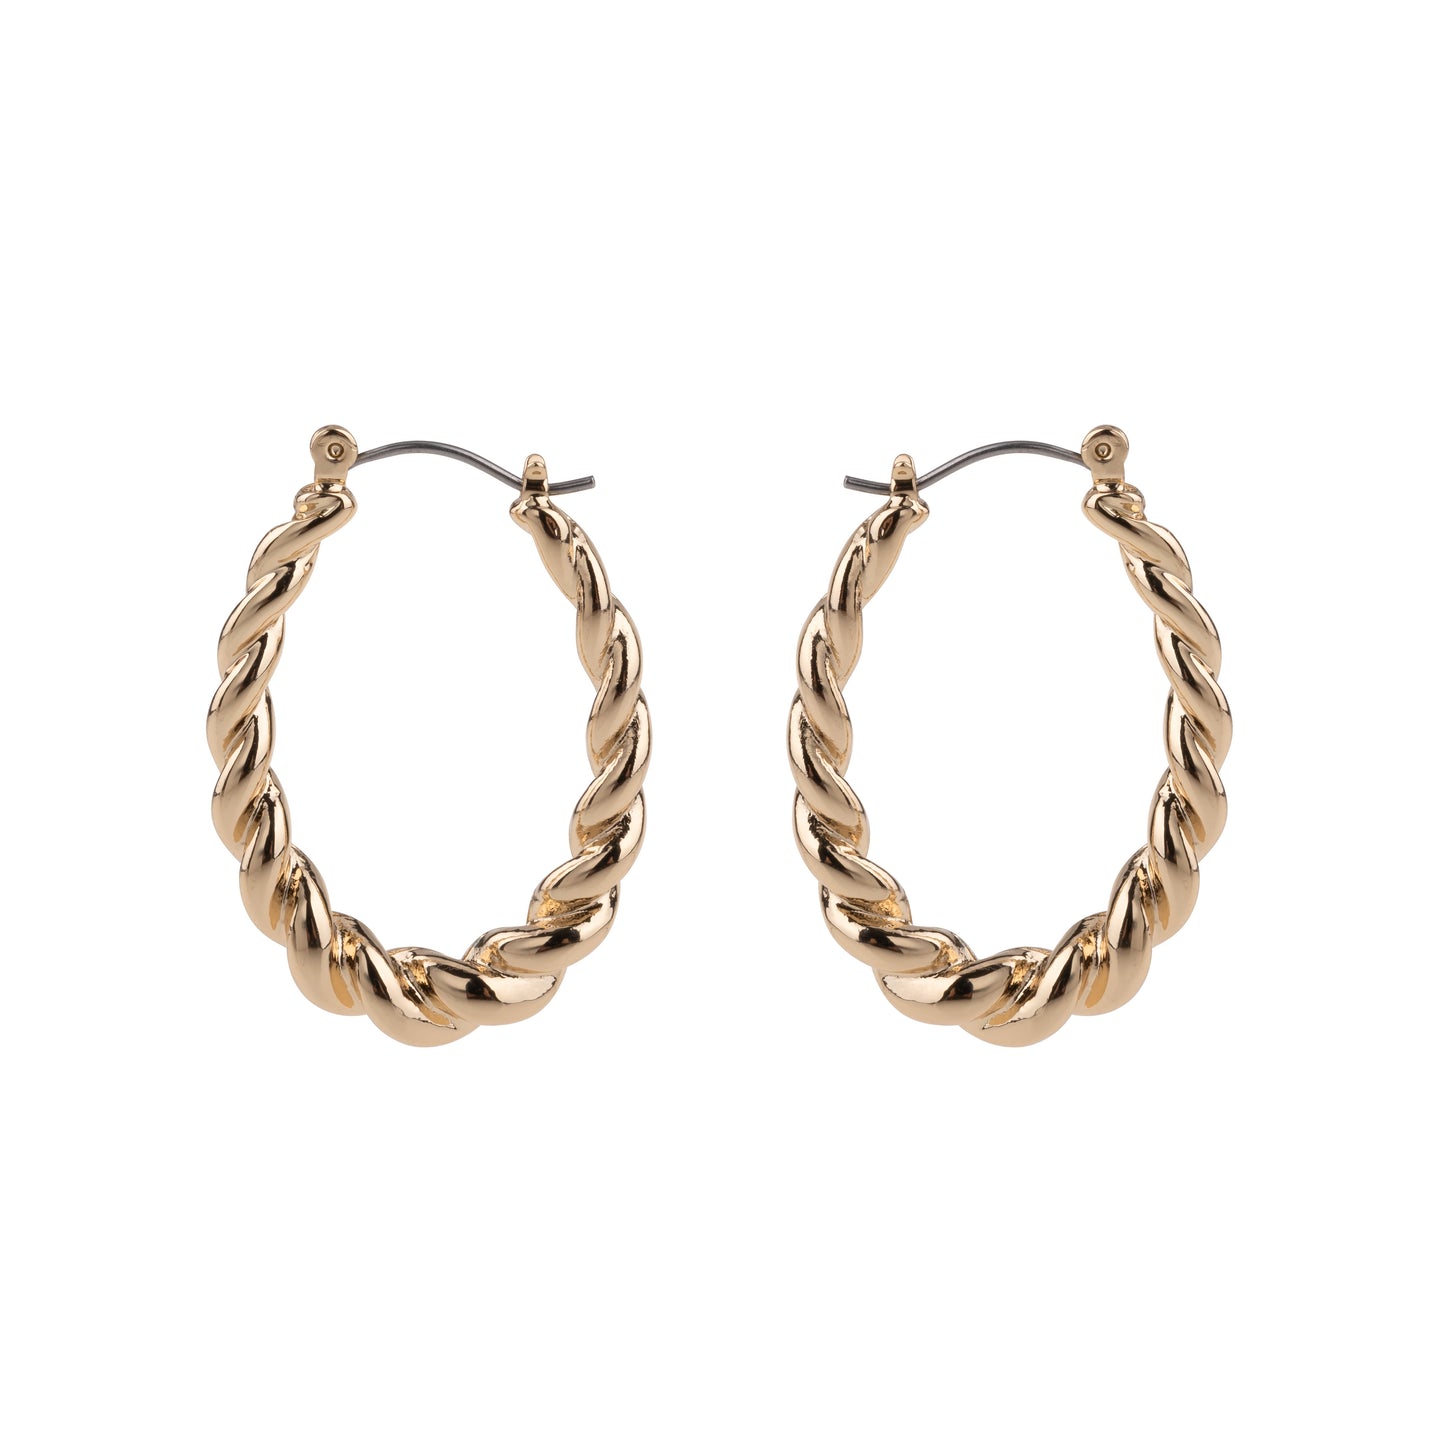 Gold Oval Twisted Metal Hoop Earrings